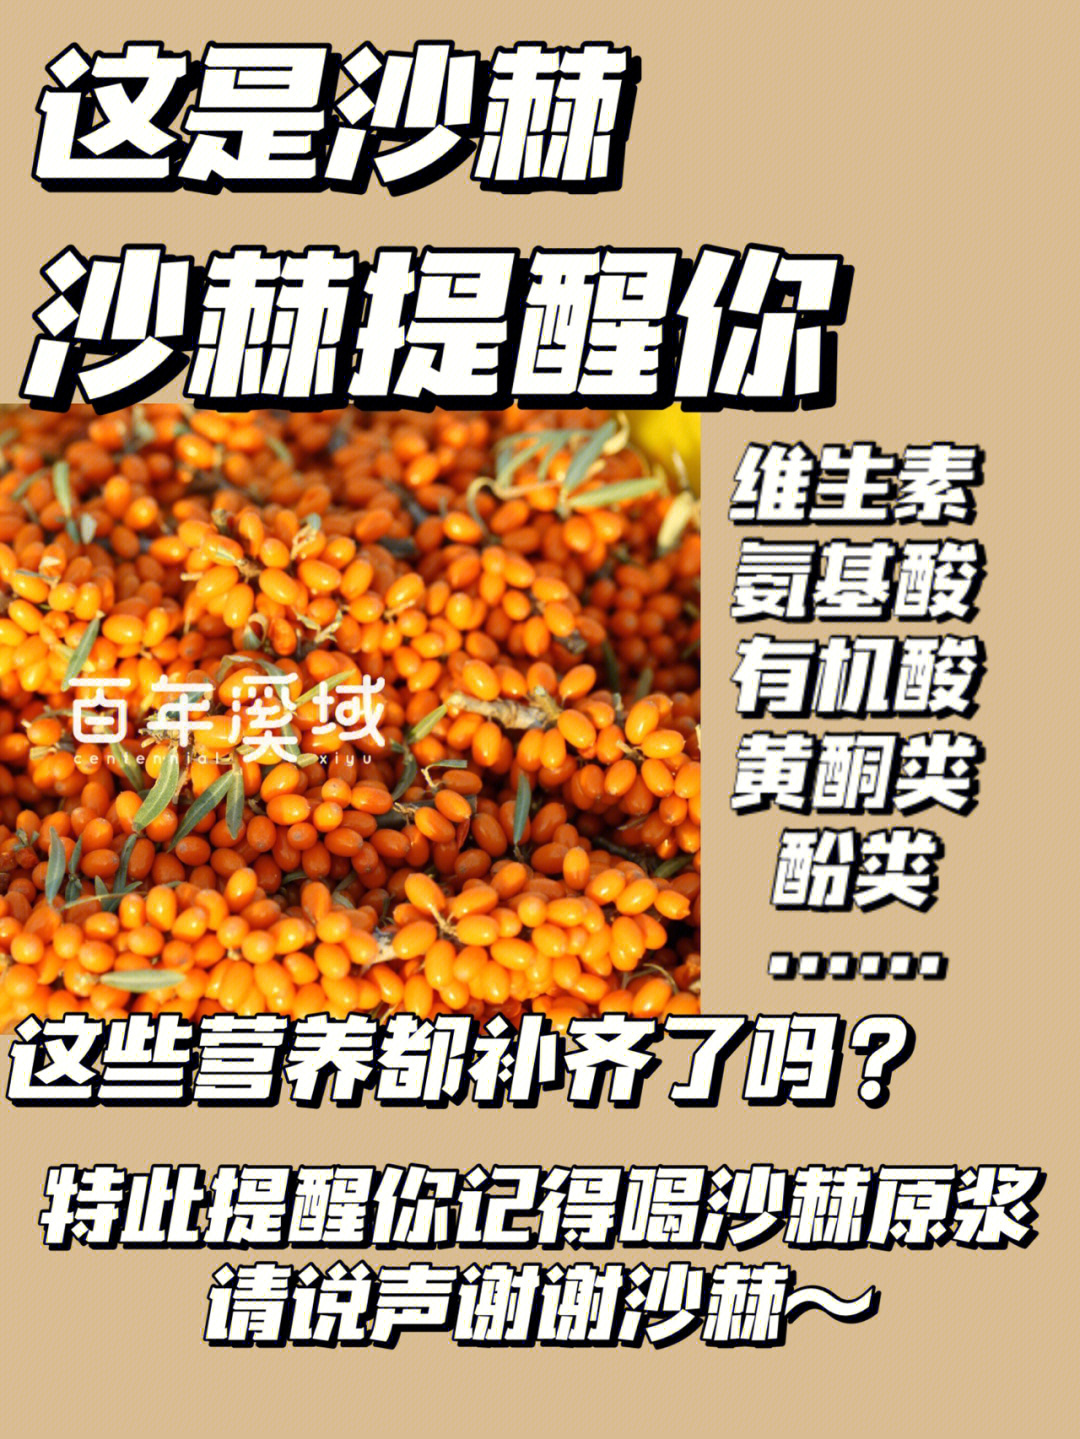 沙棘果是藏族和蒙古族常用药材,具有丰富的营养价值15(296106